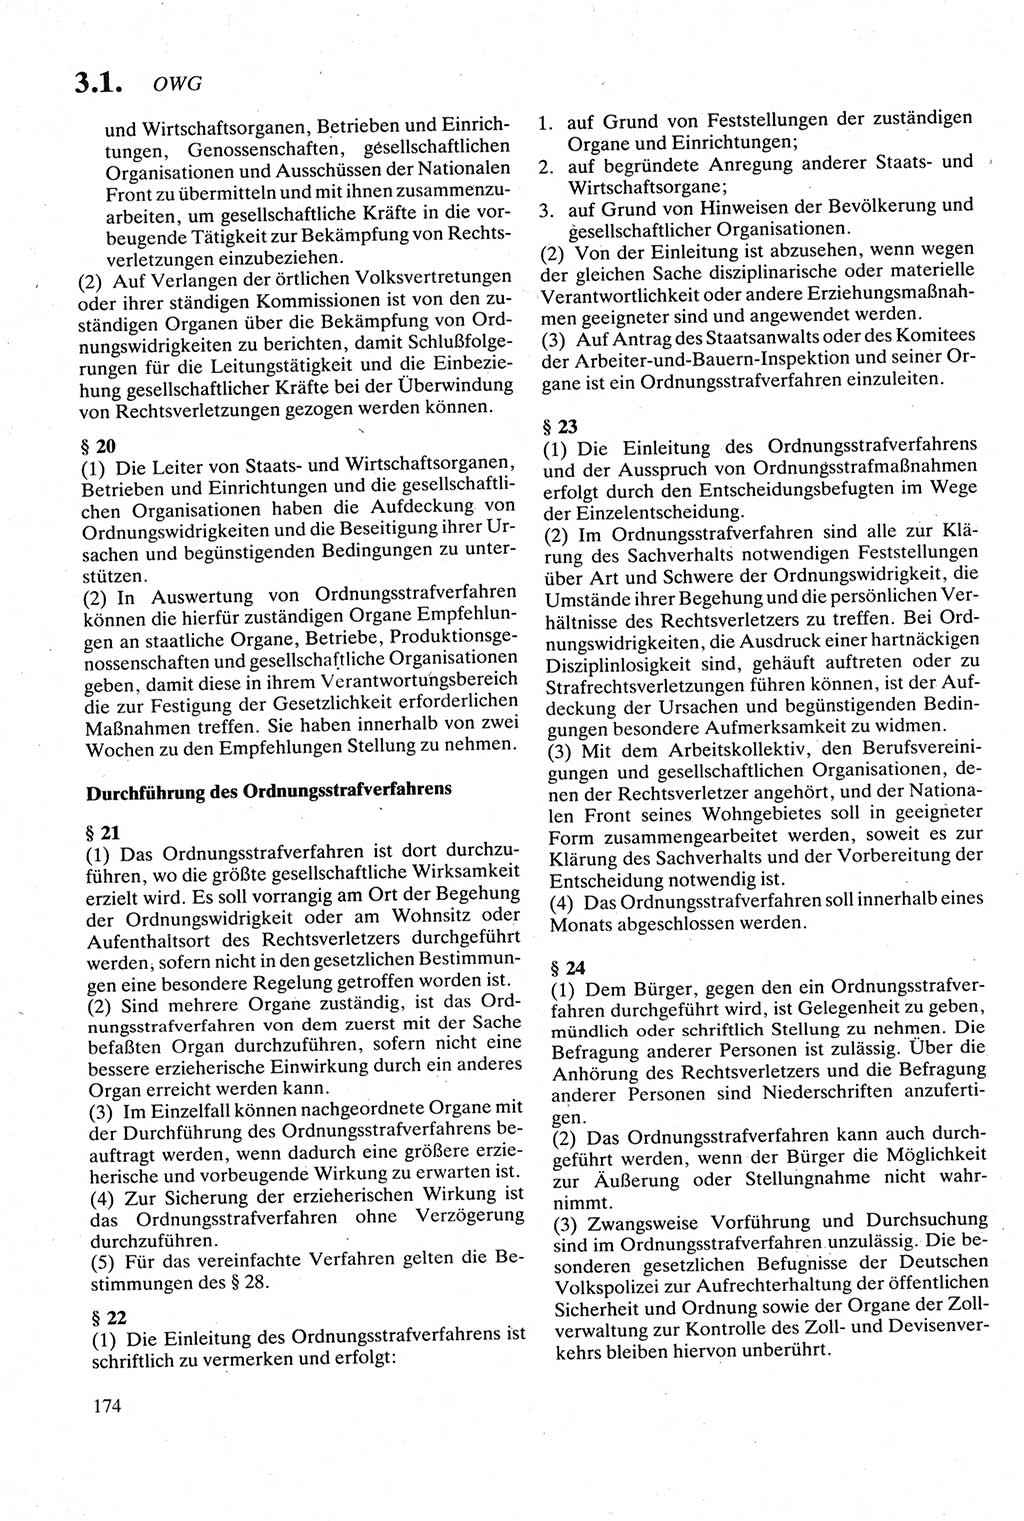 Strafgesetzbuch (StGB) der Deutschen Demokratischen Republik (DDR) sowie angrenzende Gesetze und Bestimmungen 1979, Seite 174 (StGB DDR Ges. Best. 1979, S. 174)